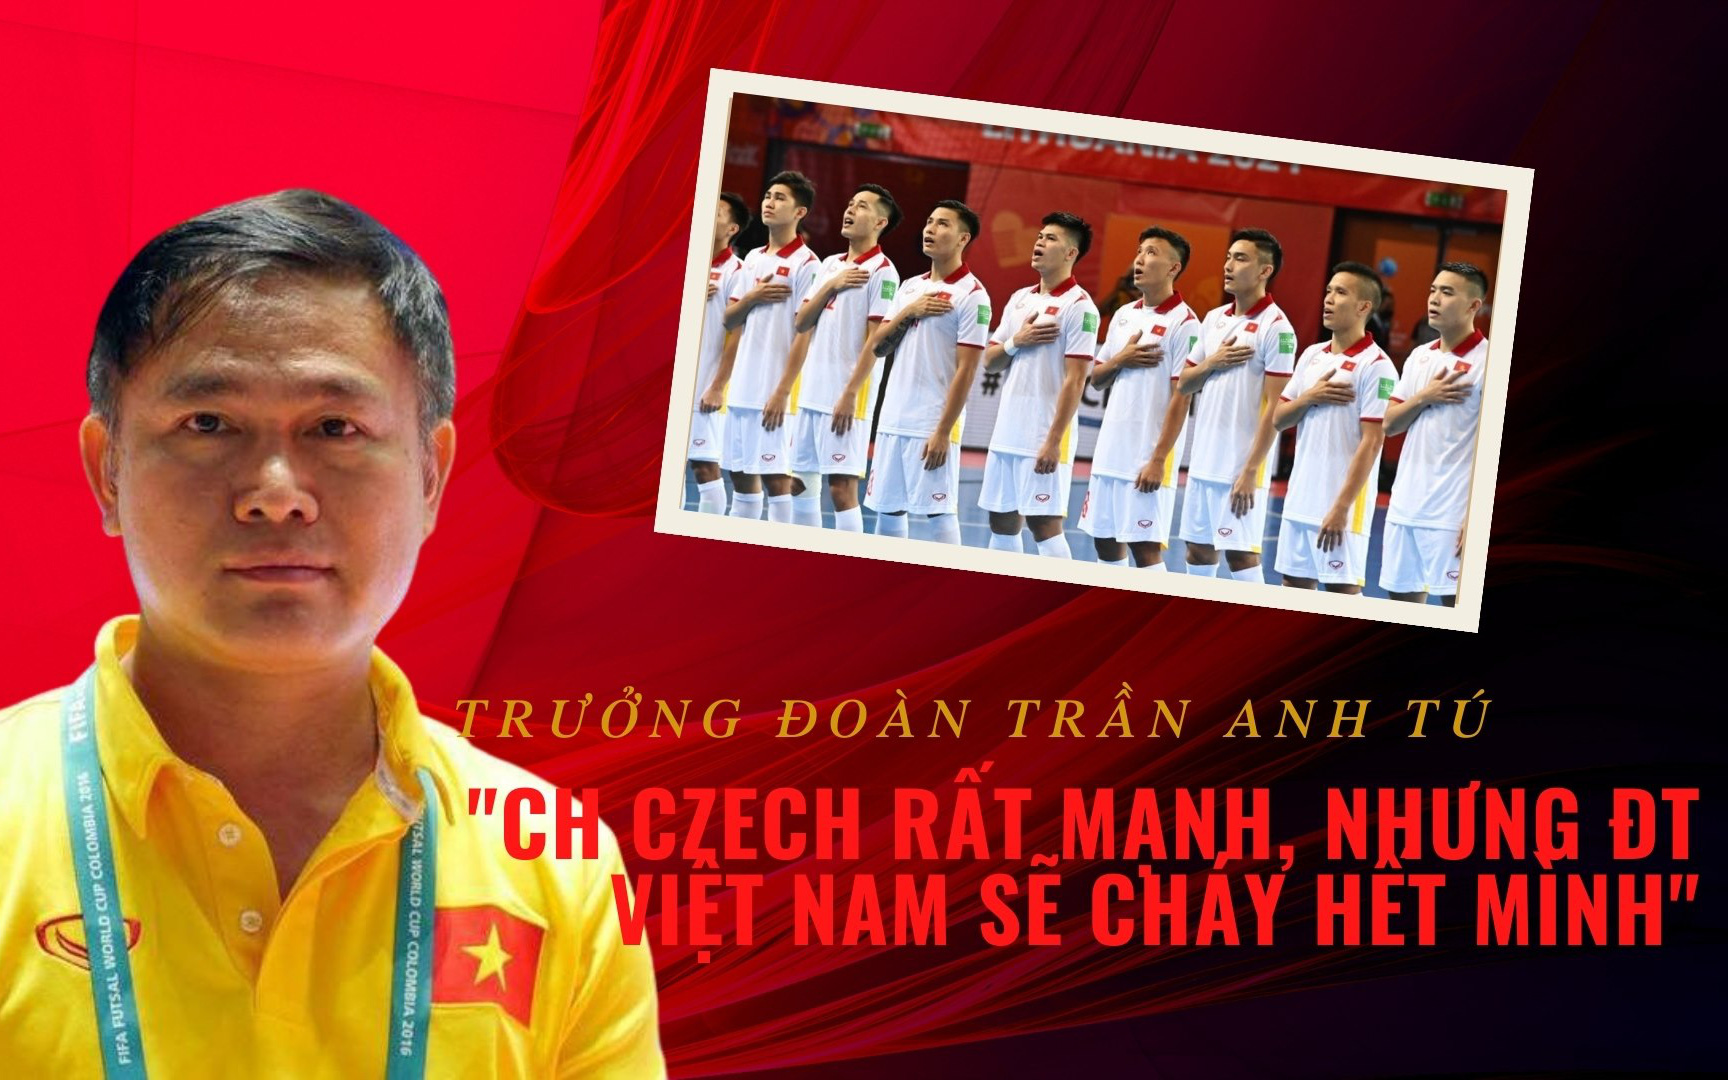 Trưởng đoàn Trần Anh Tú: "CH Czech rất mạnh, nhưng ĐT Việt Nam sẽ cháy hết mình"